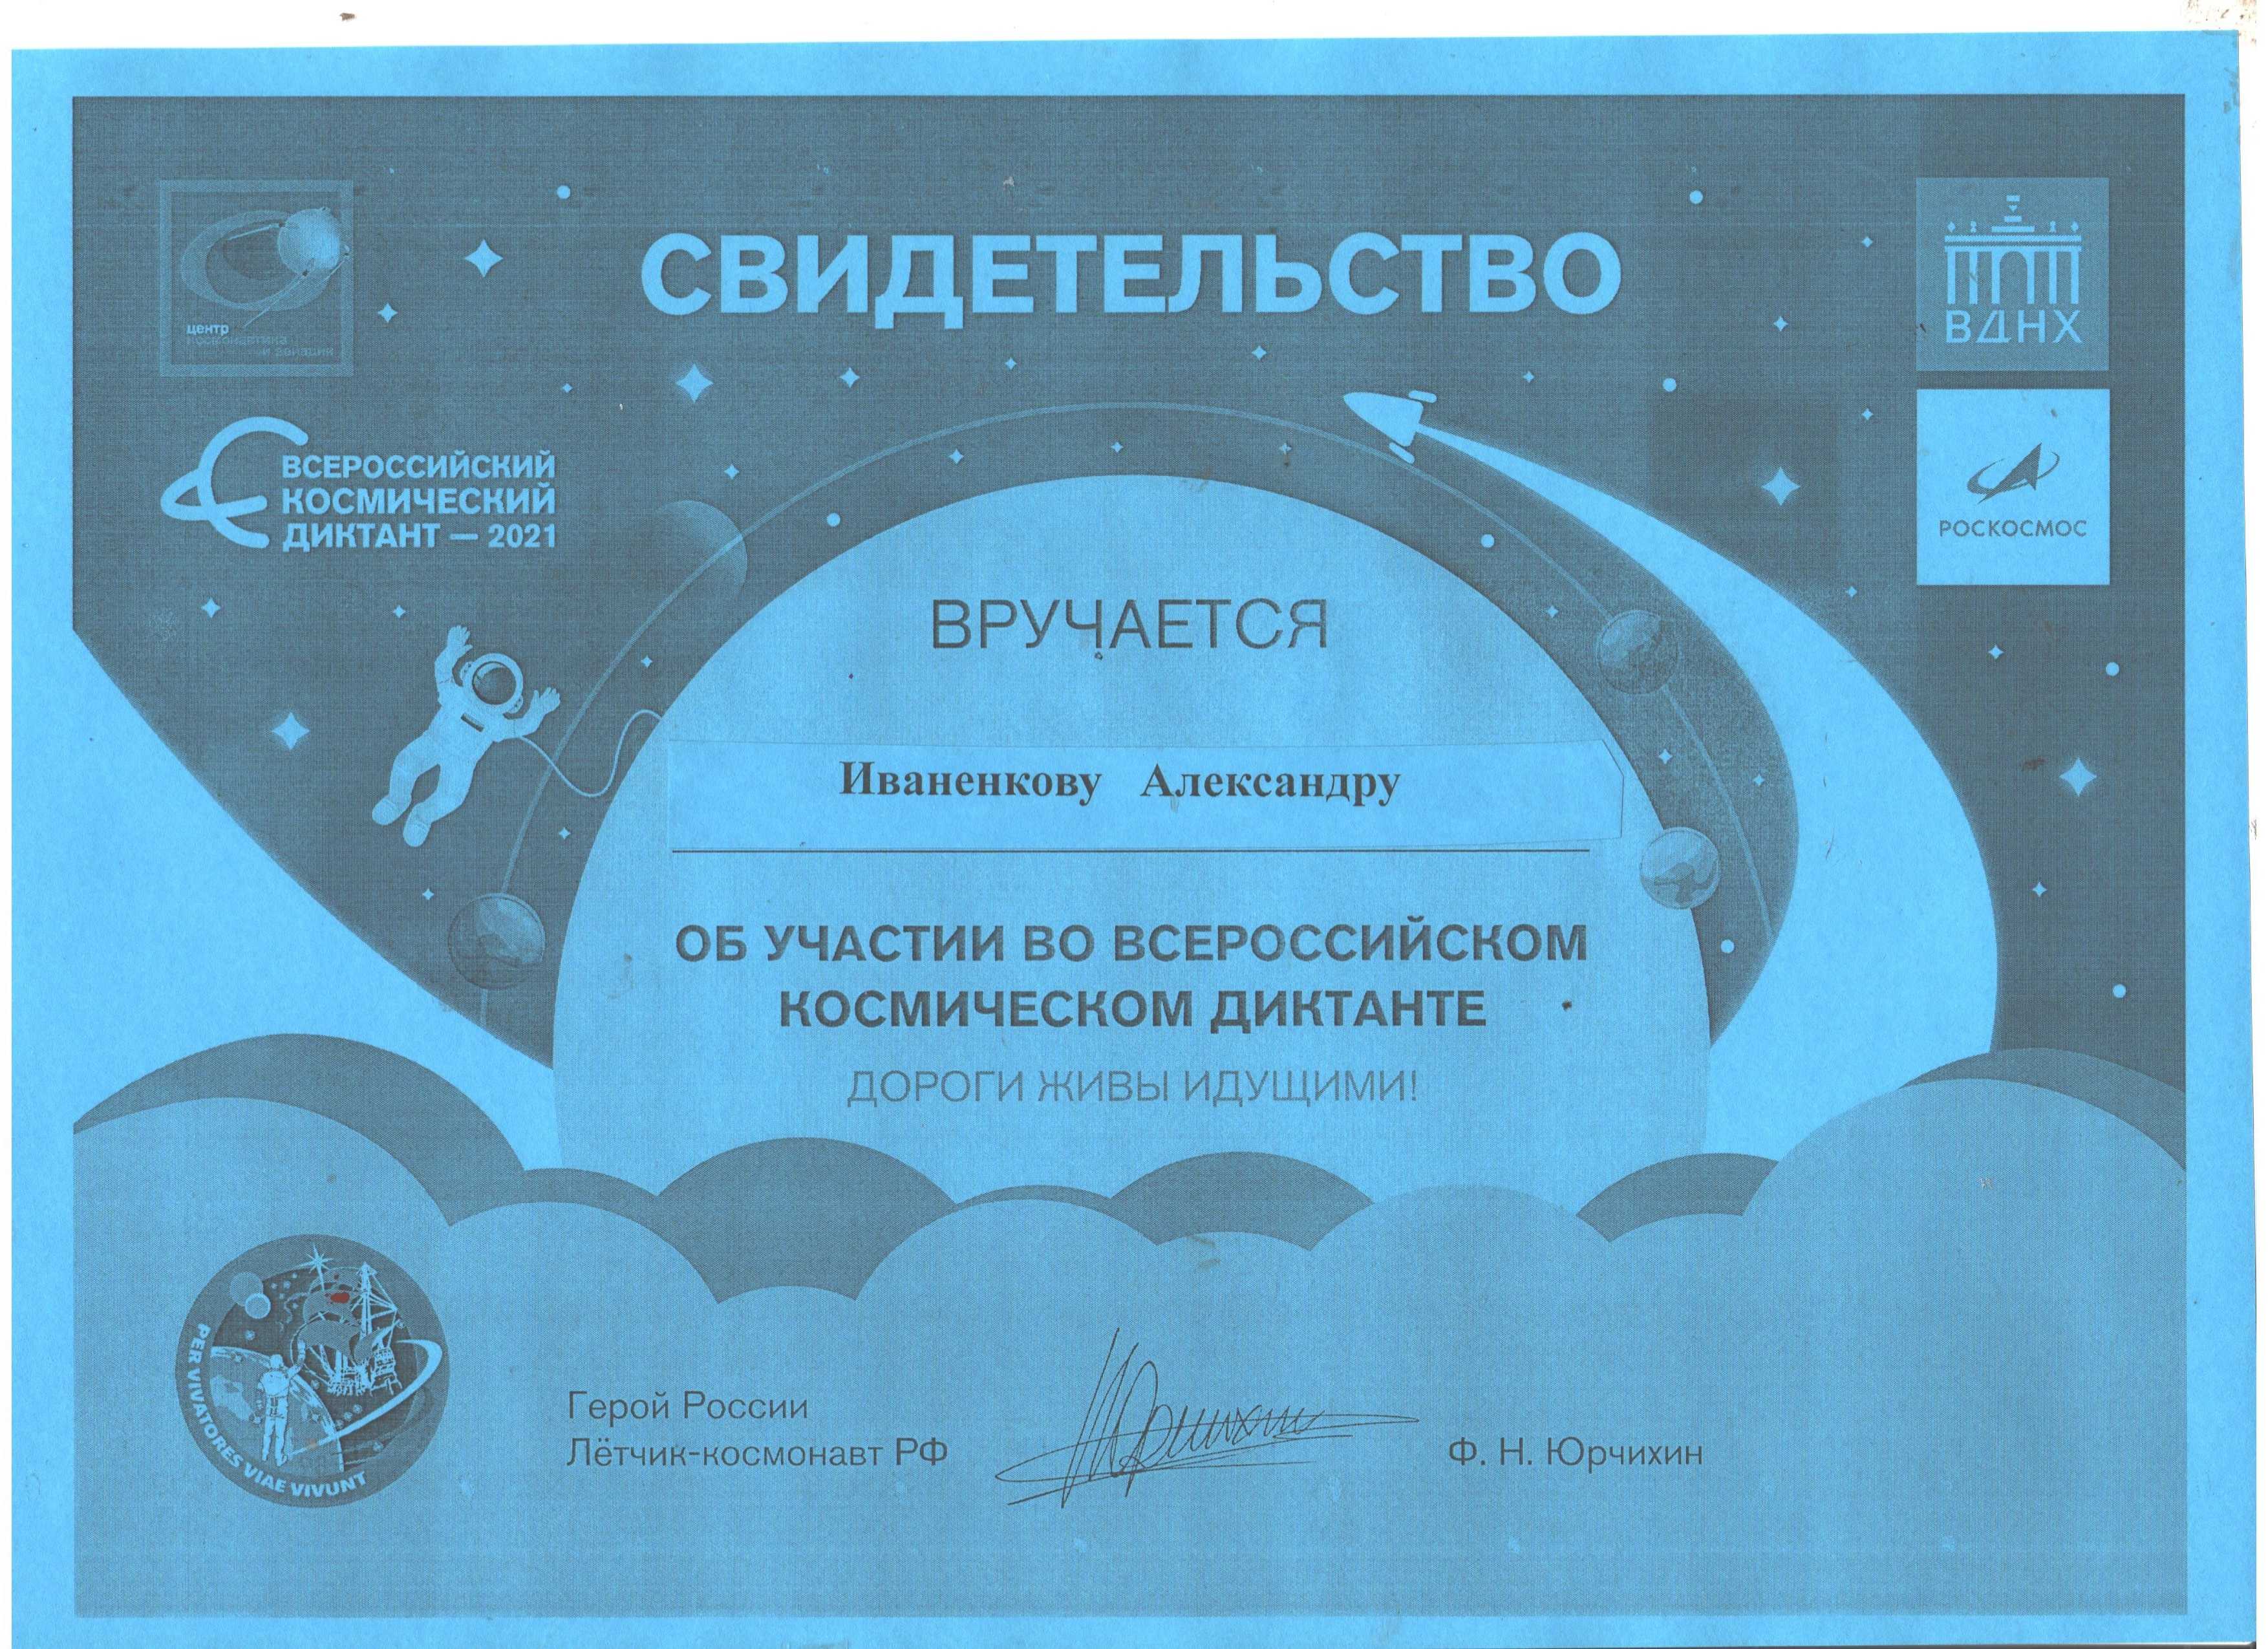 Космический диктант ответы. Сертификат Всероссийский космический диктант. Космический диктант 2021 сертификат. Всероссийский космический диктант 2021 сертификат. Всероссийский космический диктант 2021.